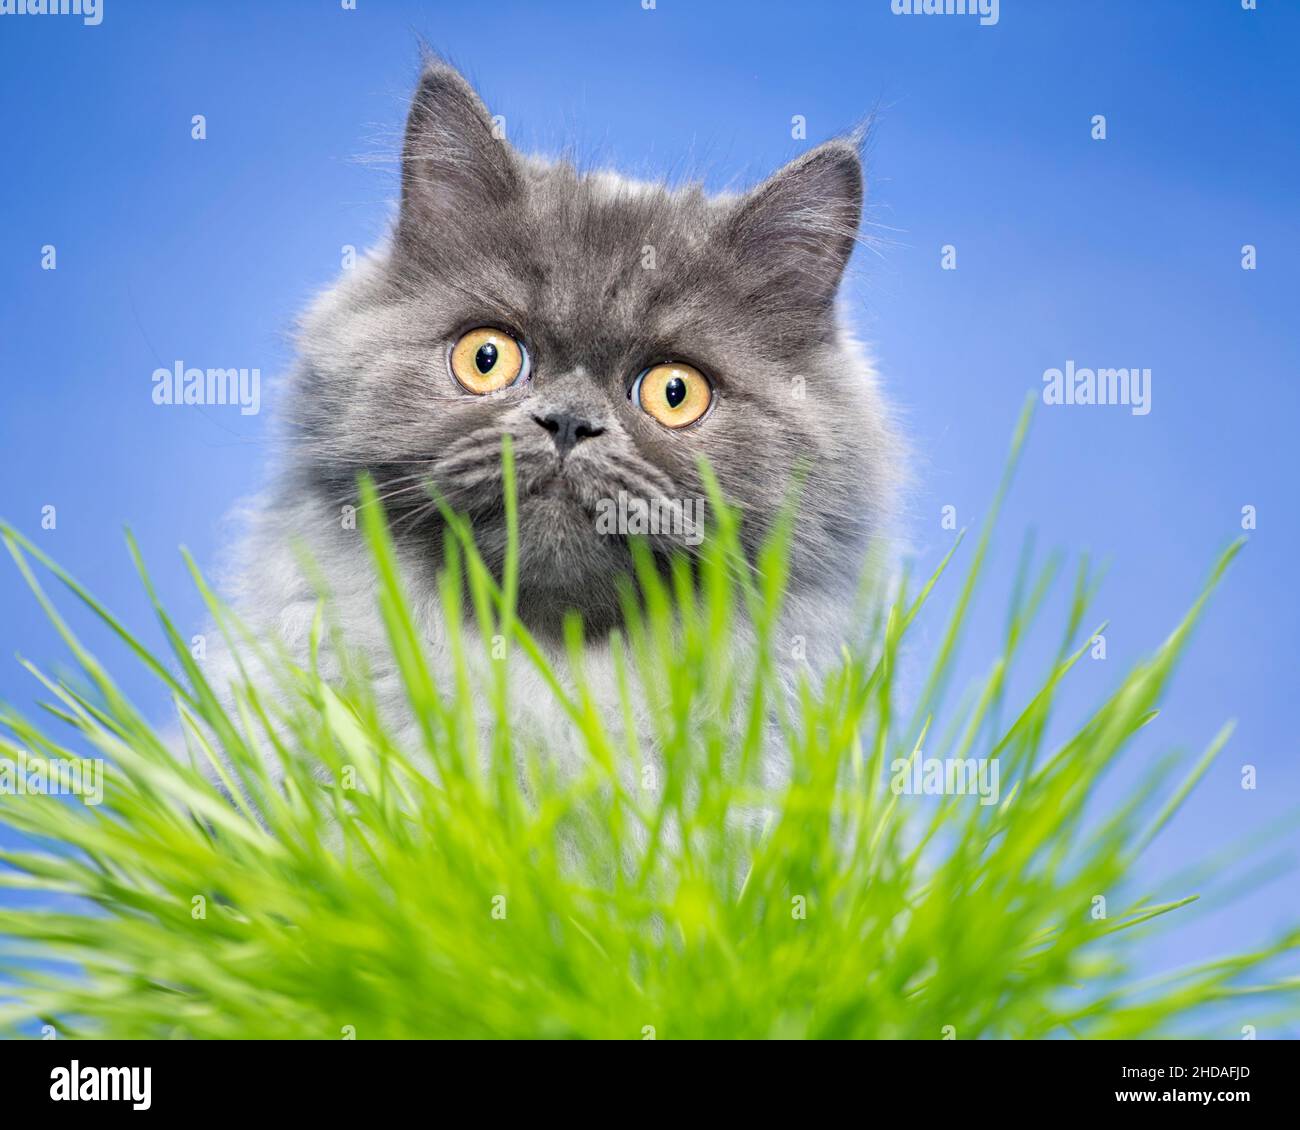 Gato gris dulce mirando la cámara a través de hojas verdes de hierba. Foto de stock